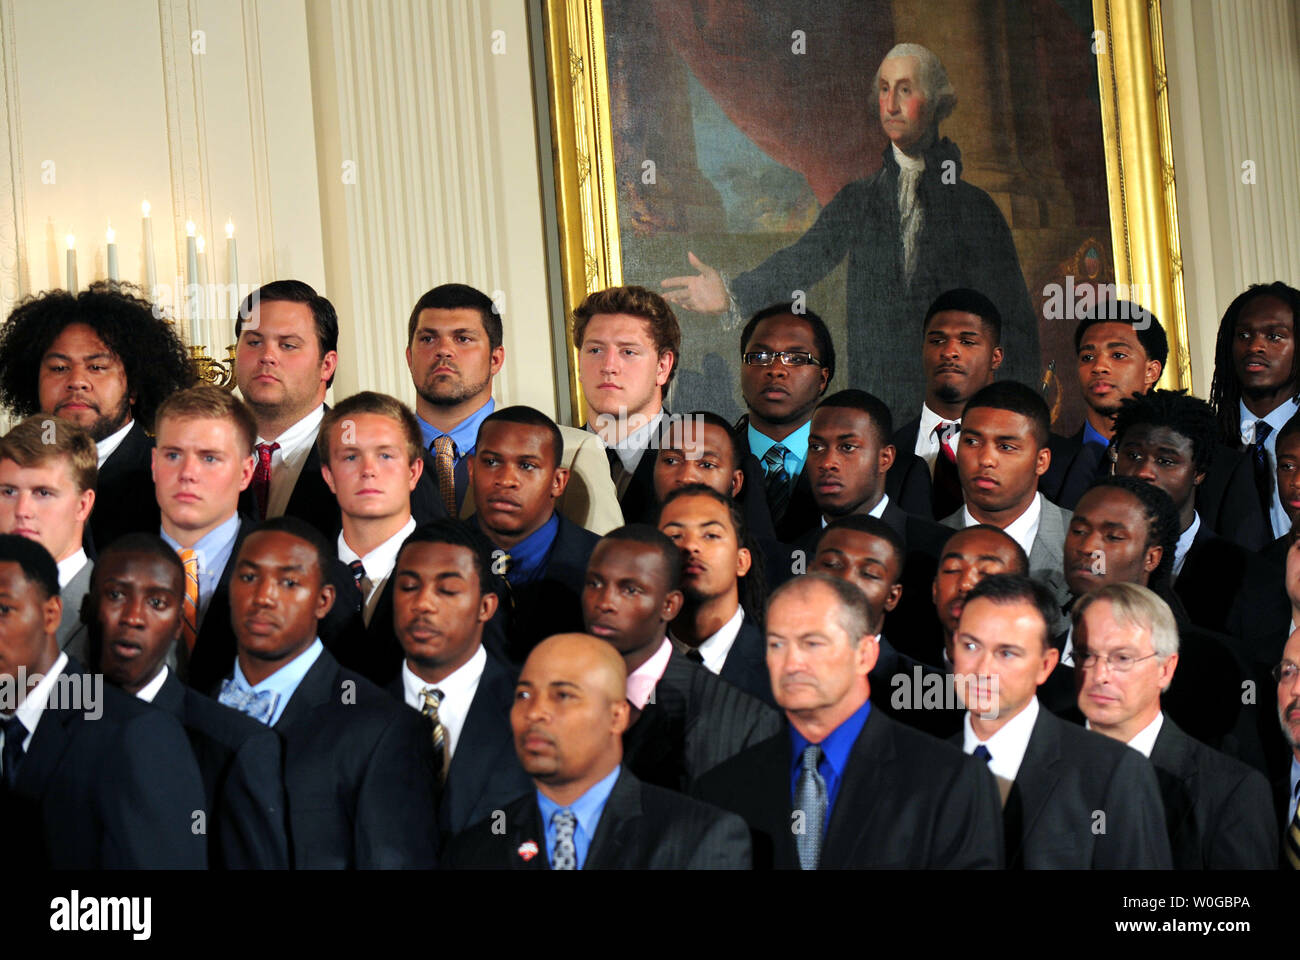 Les membres de l'équipe de football d'Auburn sont vus sous un portrait de George Washington au cours d'une cérémonie en l'honneur du Champion NCAA 2010 Auburn Tigers dans l'Est à la Maison Blanche à Washington le 8 juin 2011. UPI/Kevin Dietsch Banque D'Images